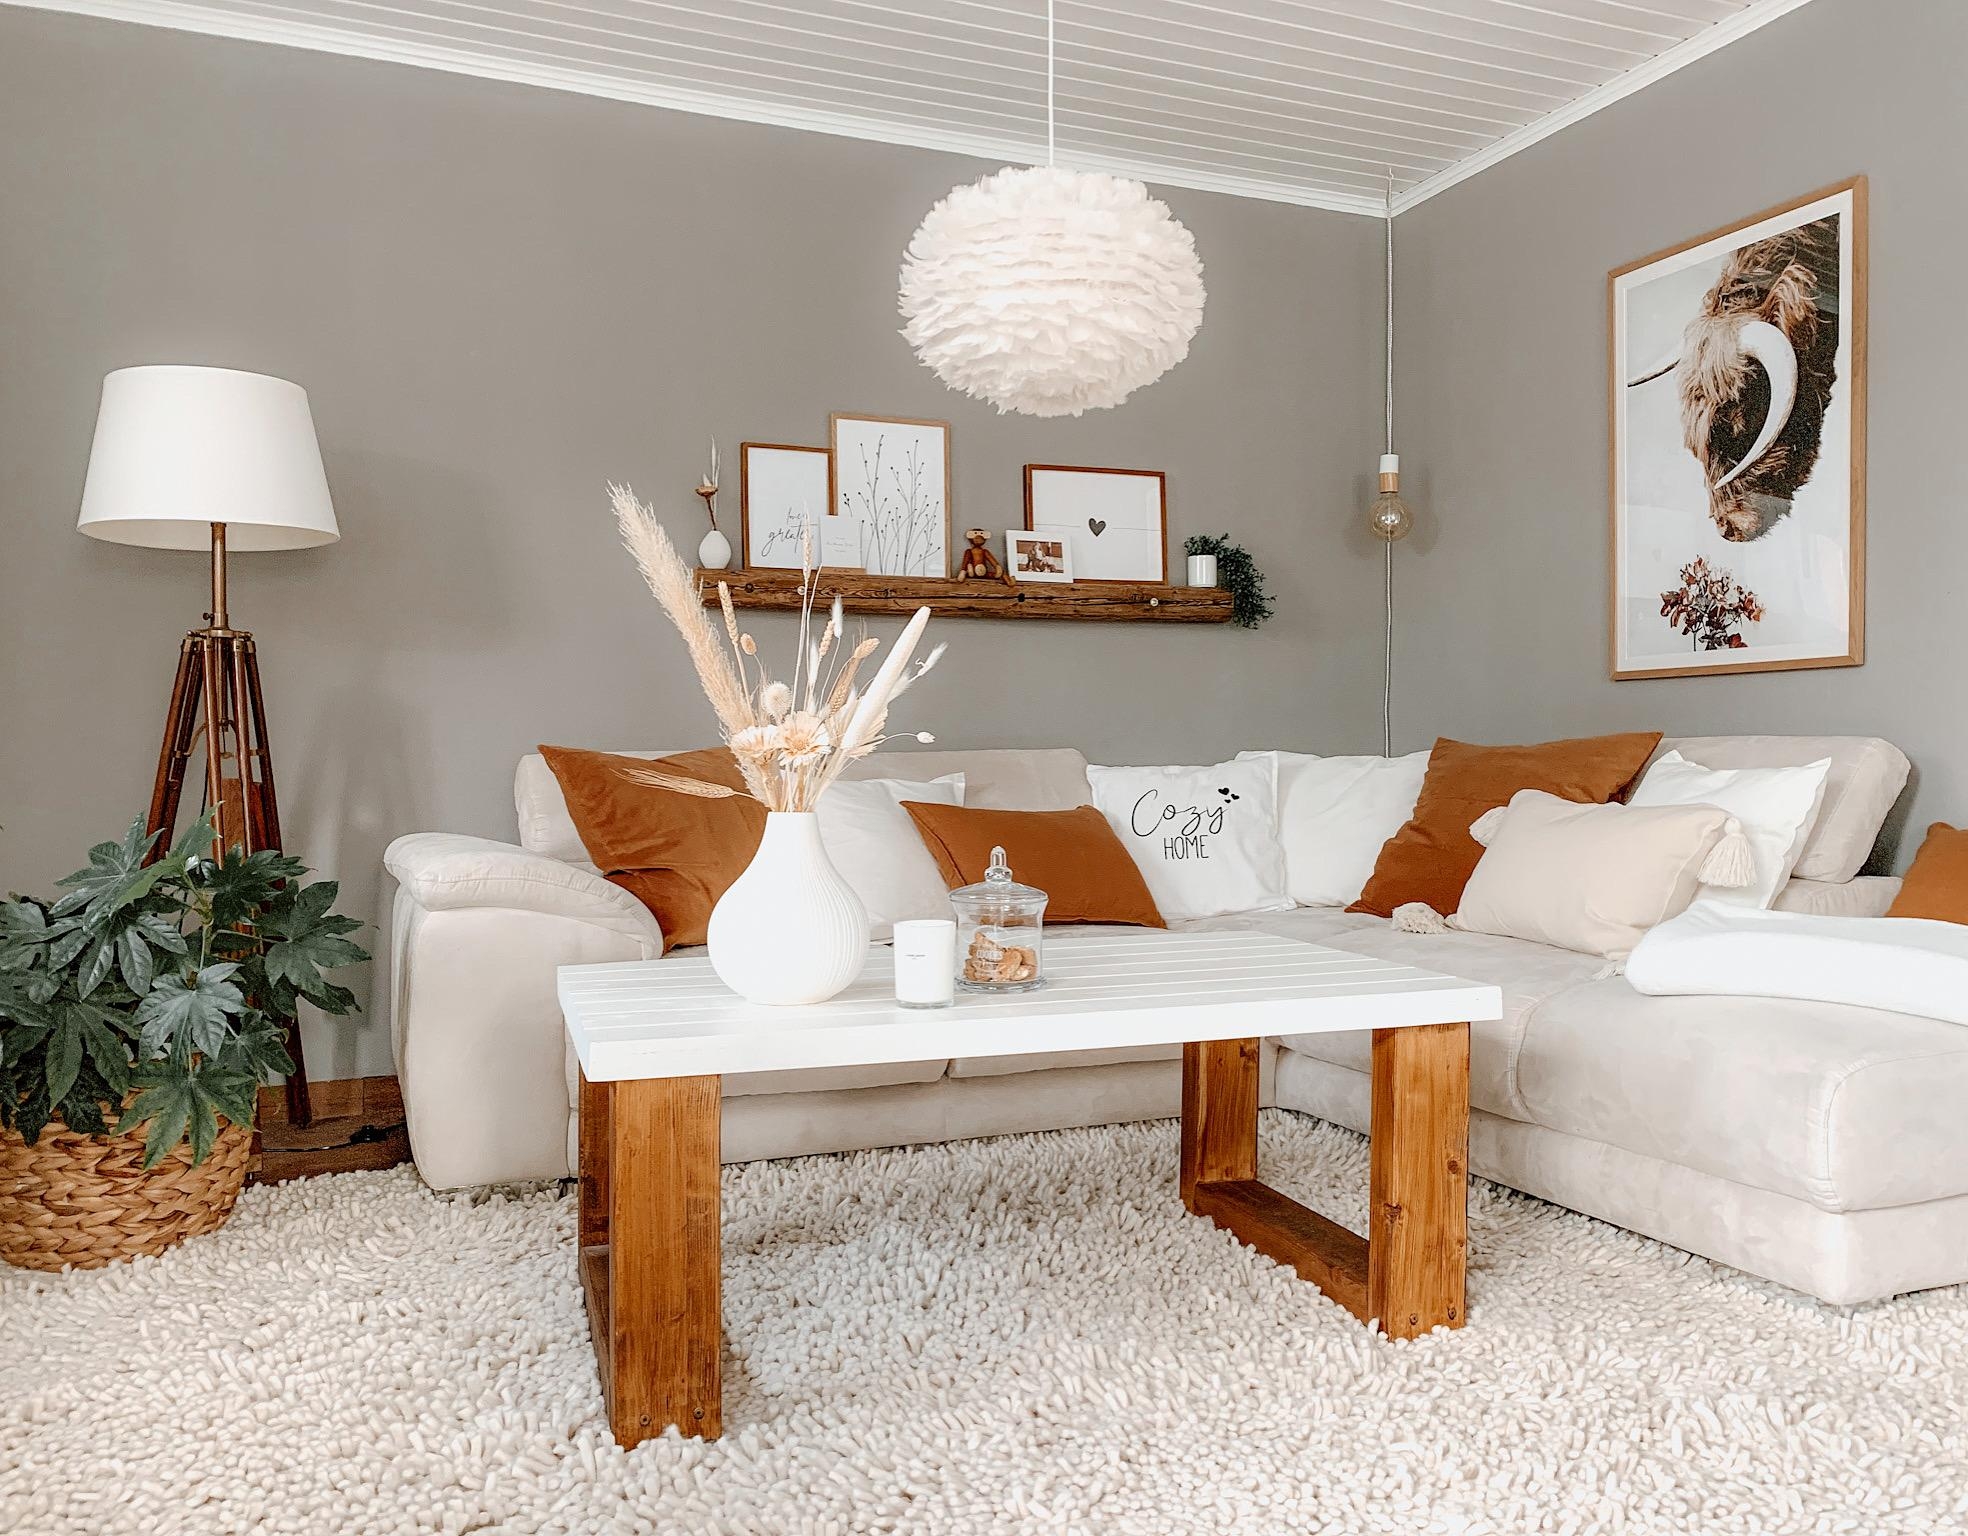 Bei uns wird es Spätsommerlich 🥰 #wohnzimmer#deko#bilderleiste#couchstyle#trockenblumen#herbstfarben#cozy#hygge